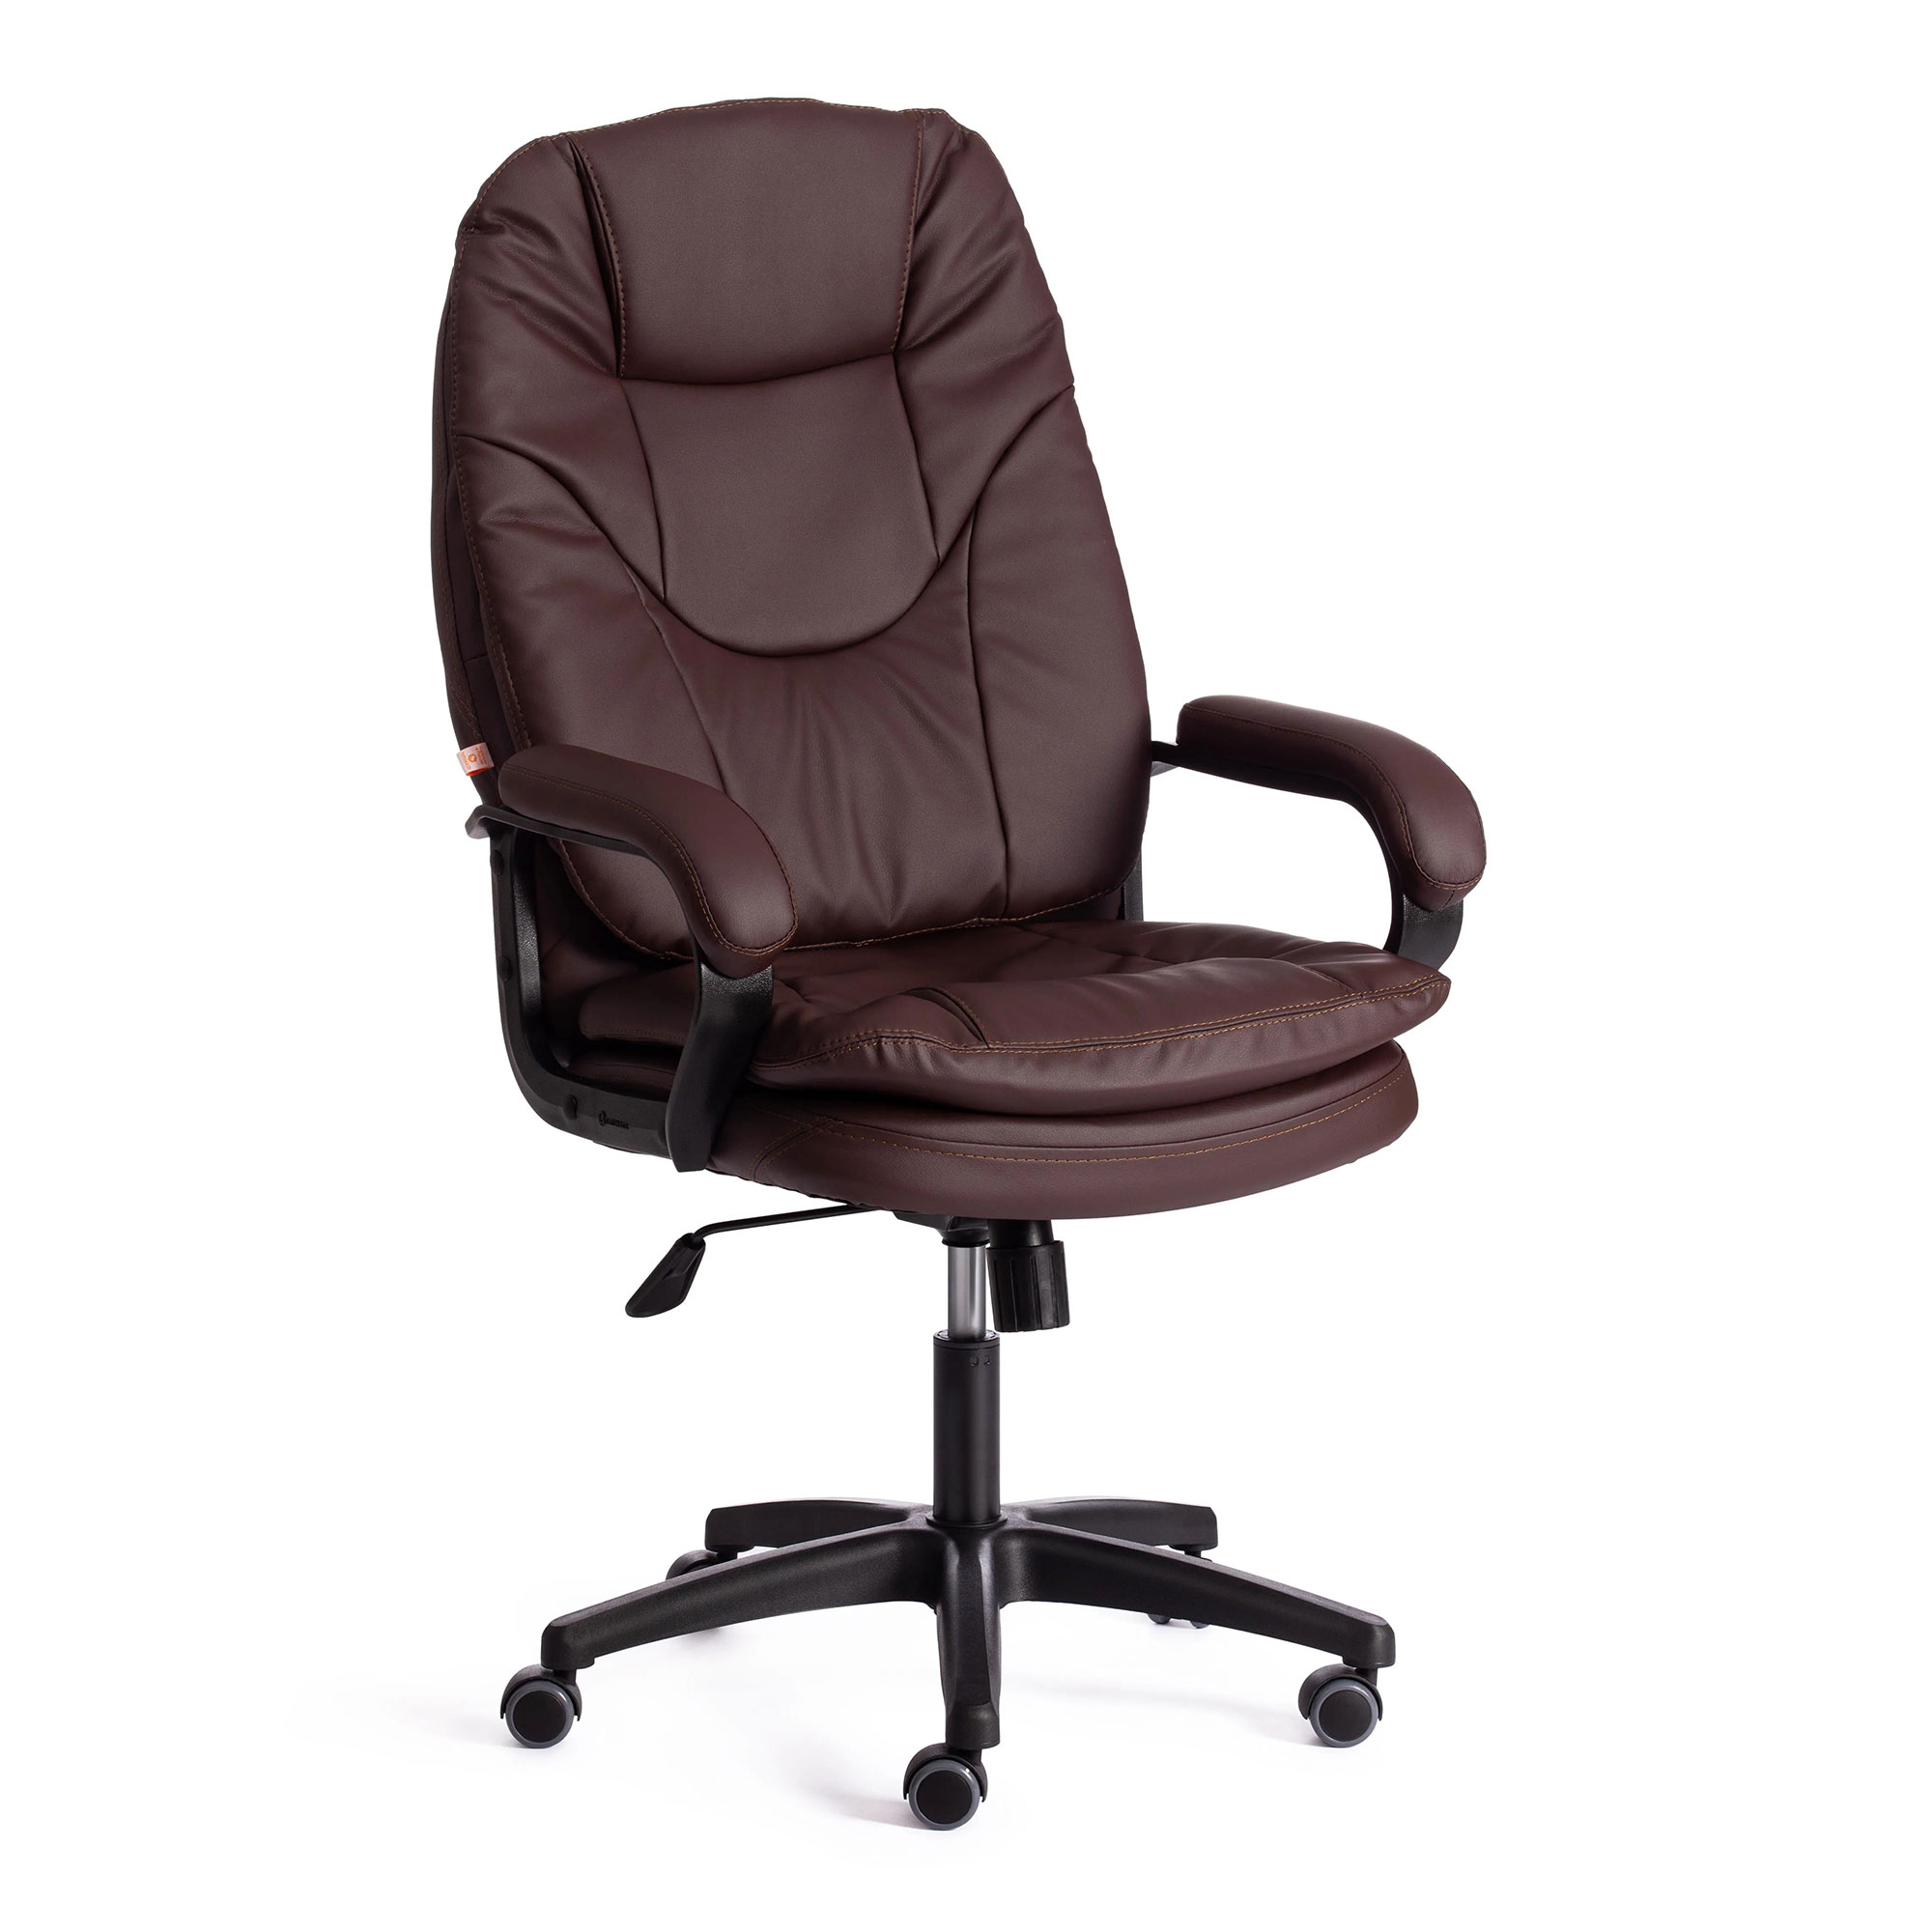 Компьютерное кресло TC Comfort коричневое 66х46х133 см (19381) кресло dreambag comfort светло бежевый экокожа 150x90 см